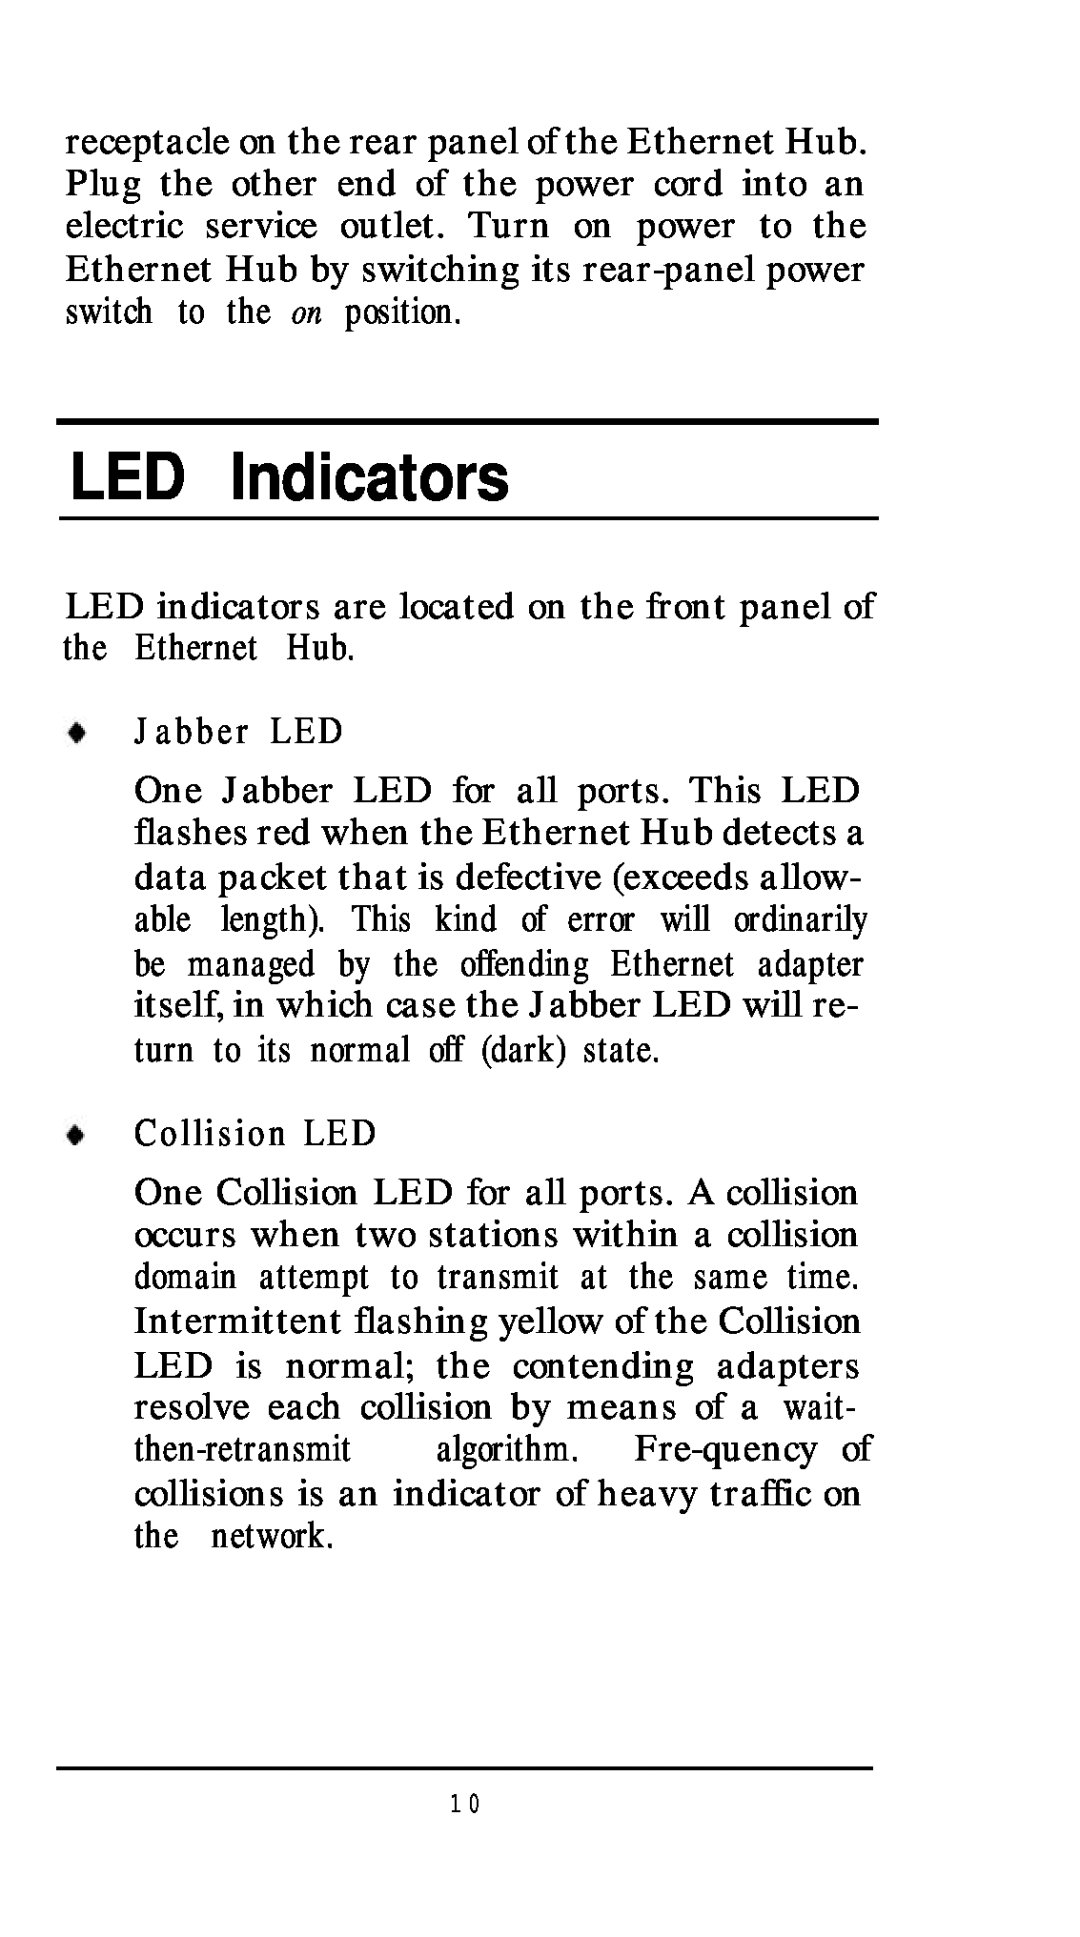 D-Link DE-81 6TP, DE81 2TP+, DE-824TP manual LED Indicators, Jabber LED, Collision LED 